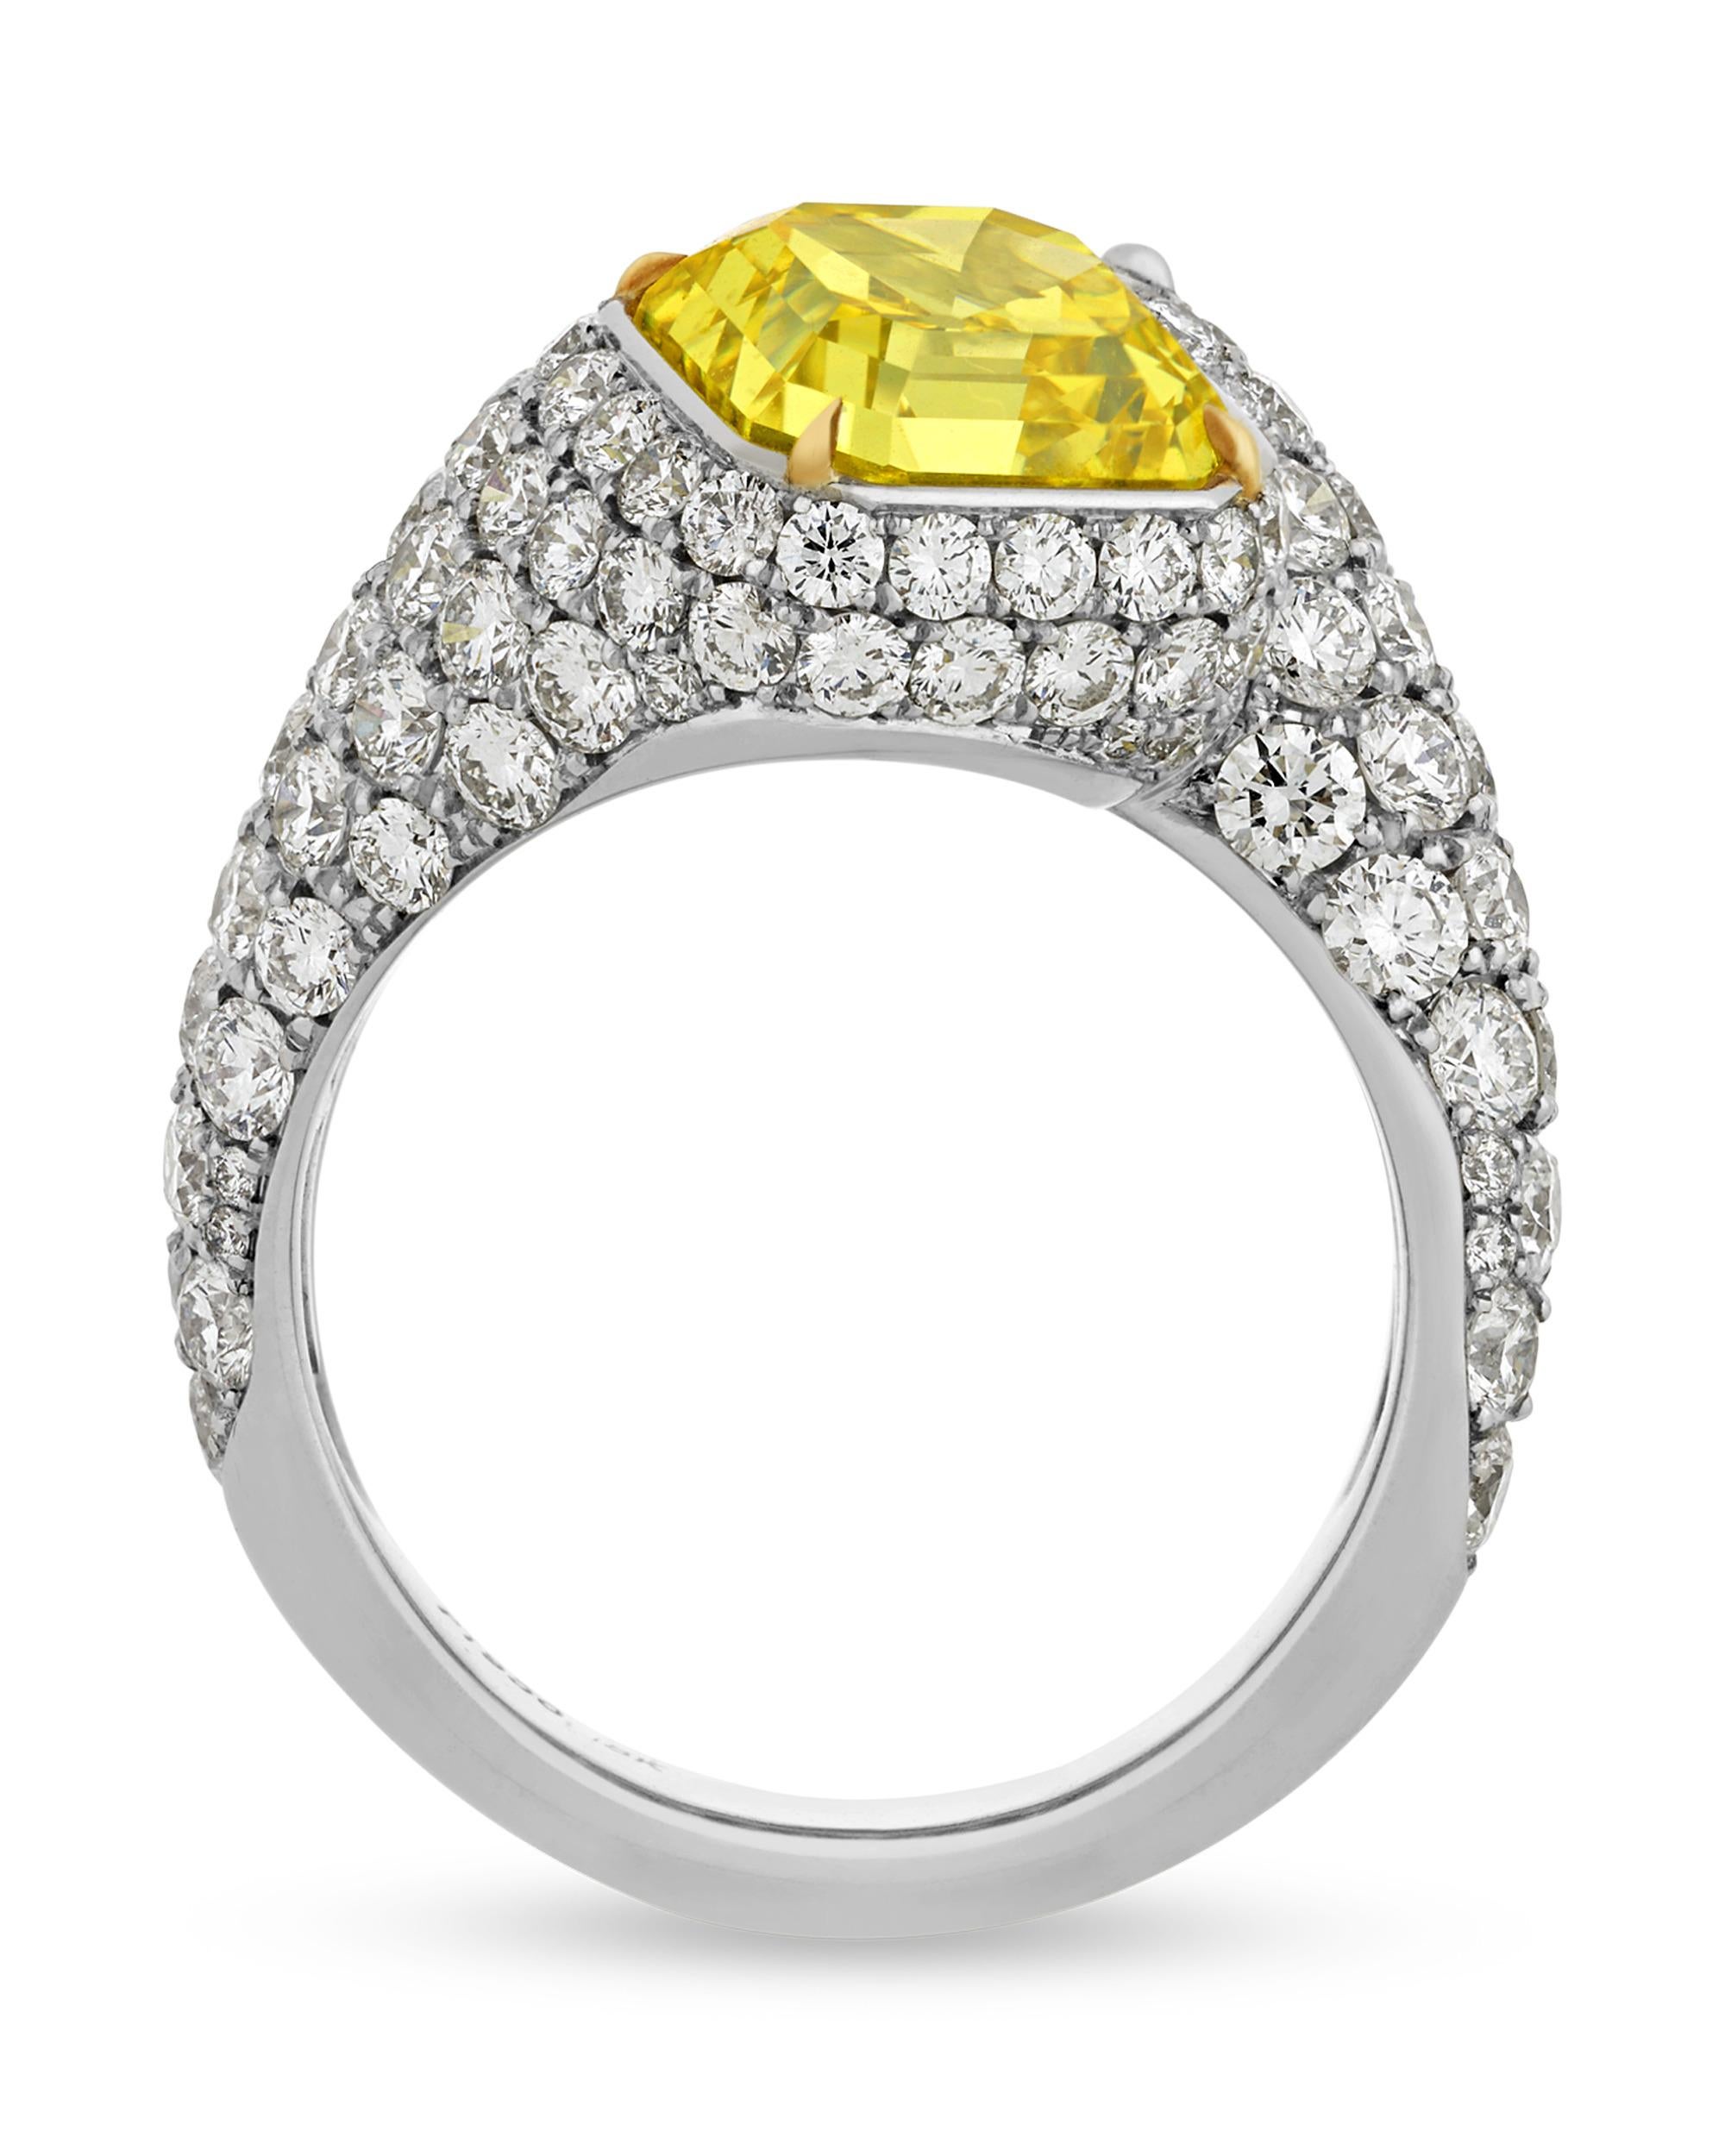 Ein gelber Diamant von 3,58 Karat und ein weißer Diamant von 3,03 Karat bilden ein elegantes Bypass-Design und harmonieren in diesem Ring. Beide Steine im Smaragdschliff sind vom Gemological Institute of America als sehr gut poliert und symmetrisch